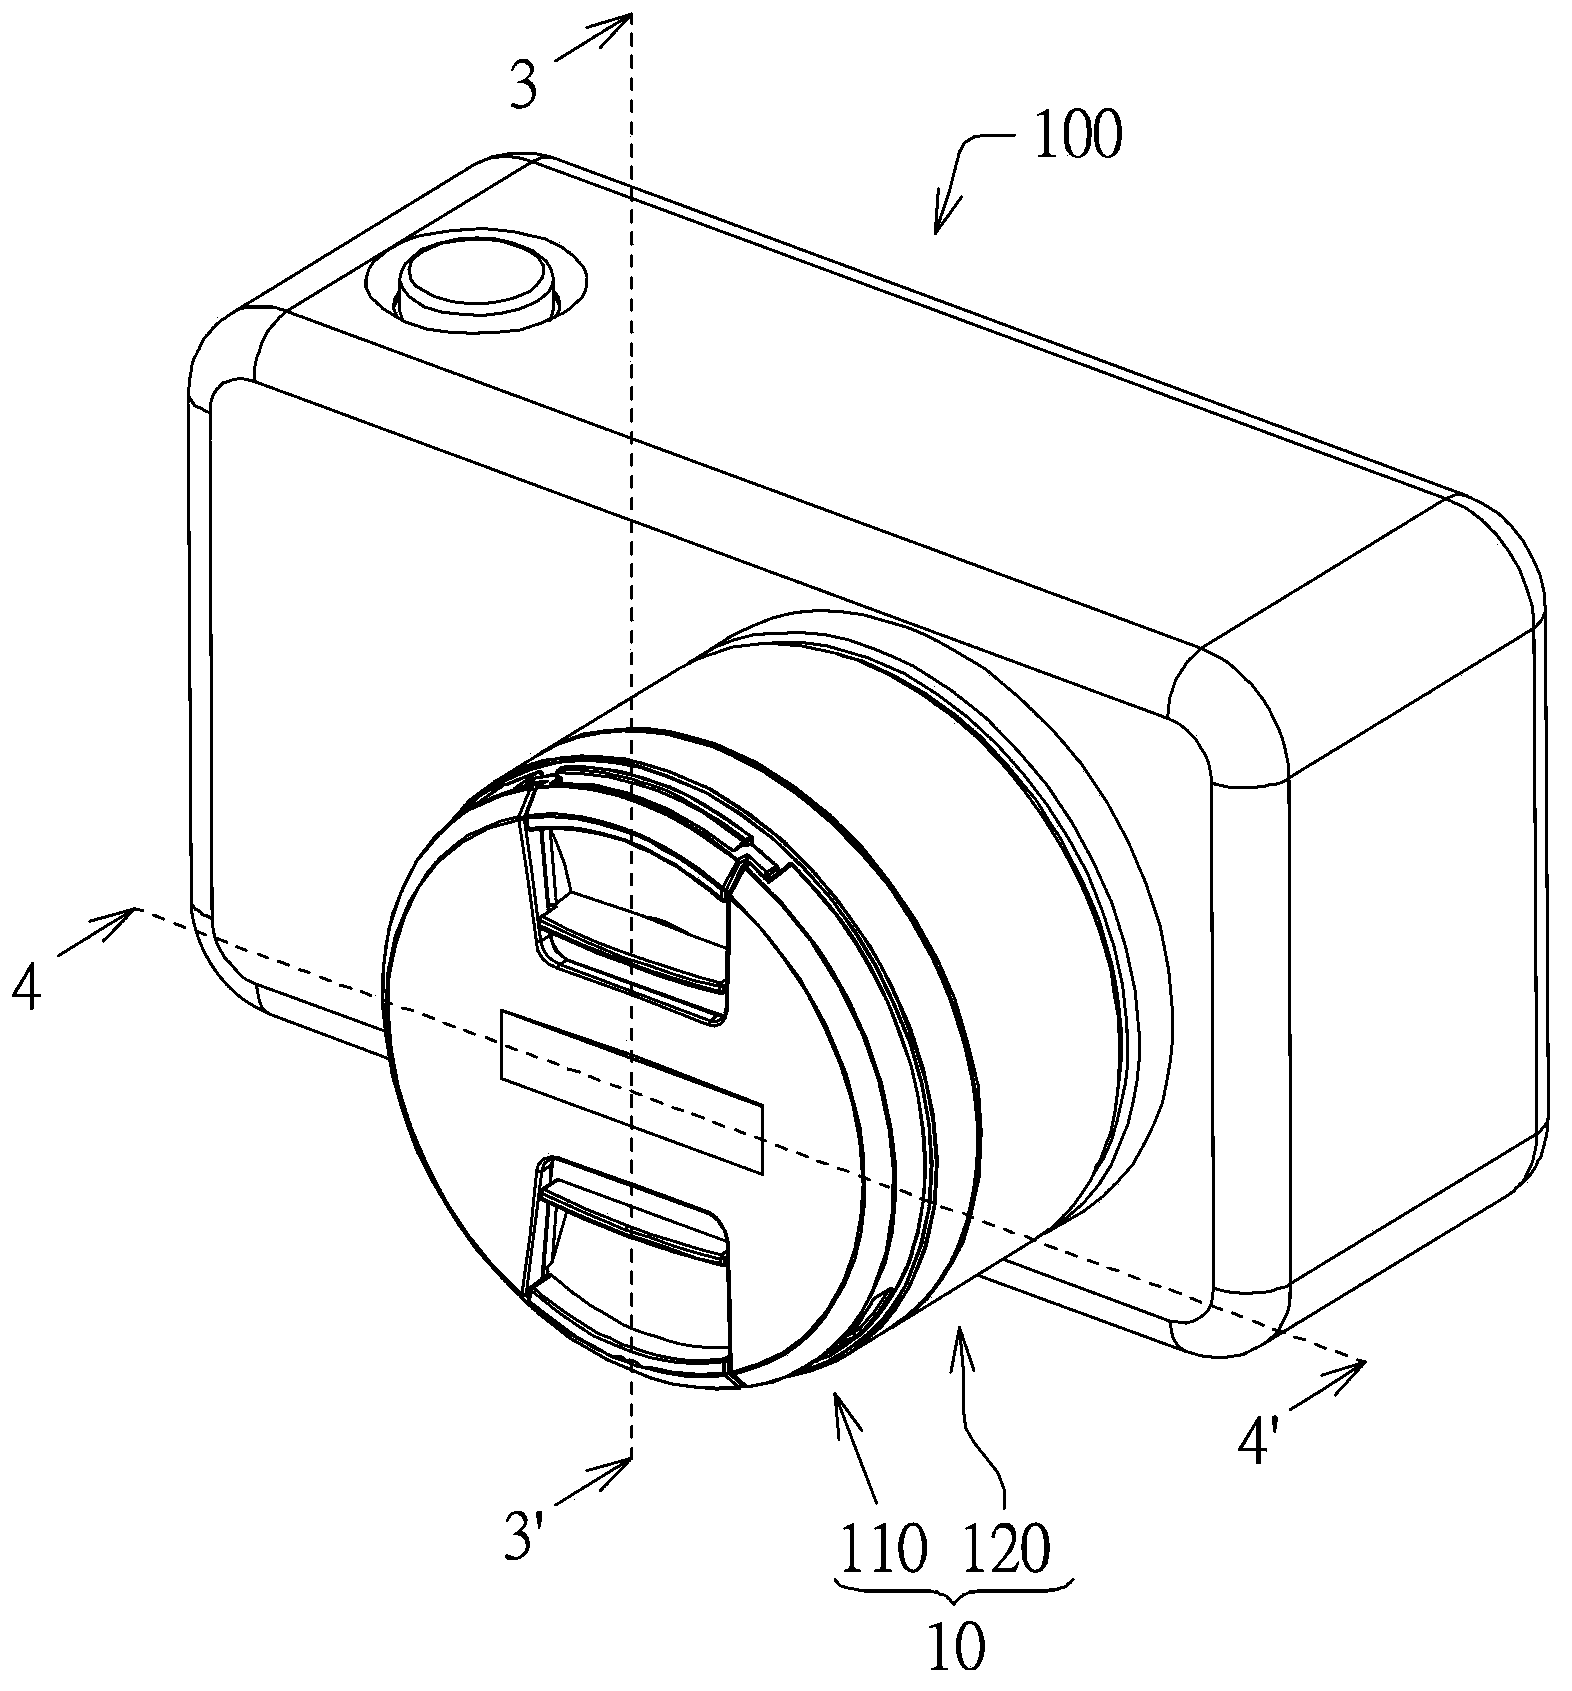 Camera lens mechanism, camera lens cover and camera lens set with camera lens mechanism and camera lens cover